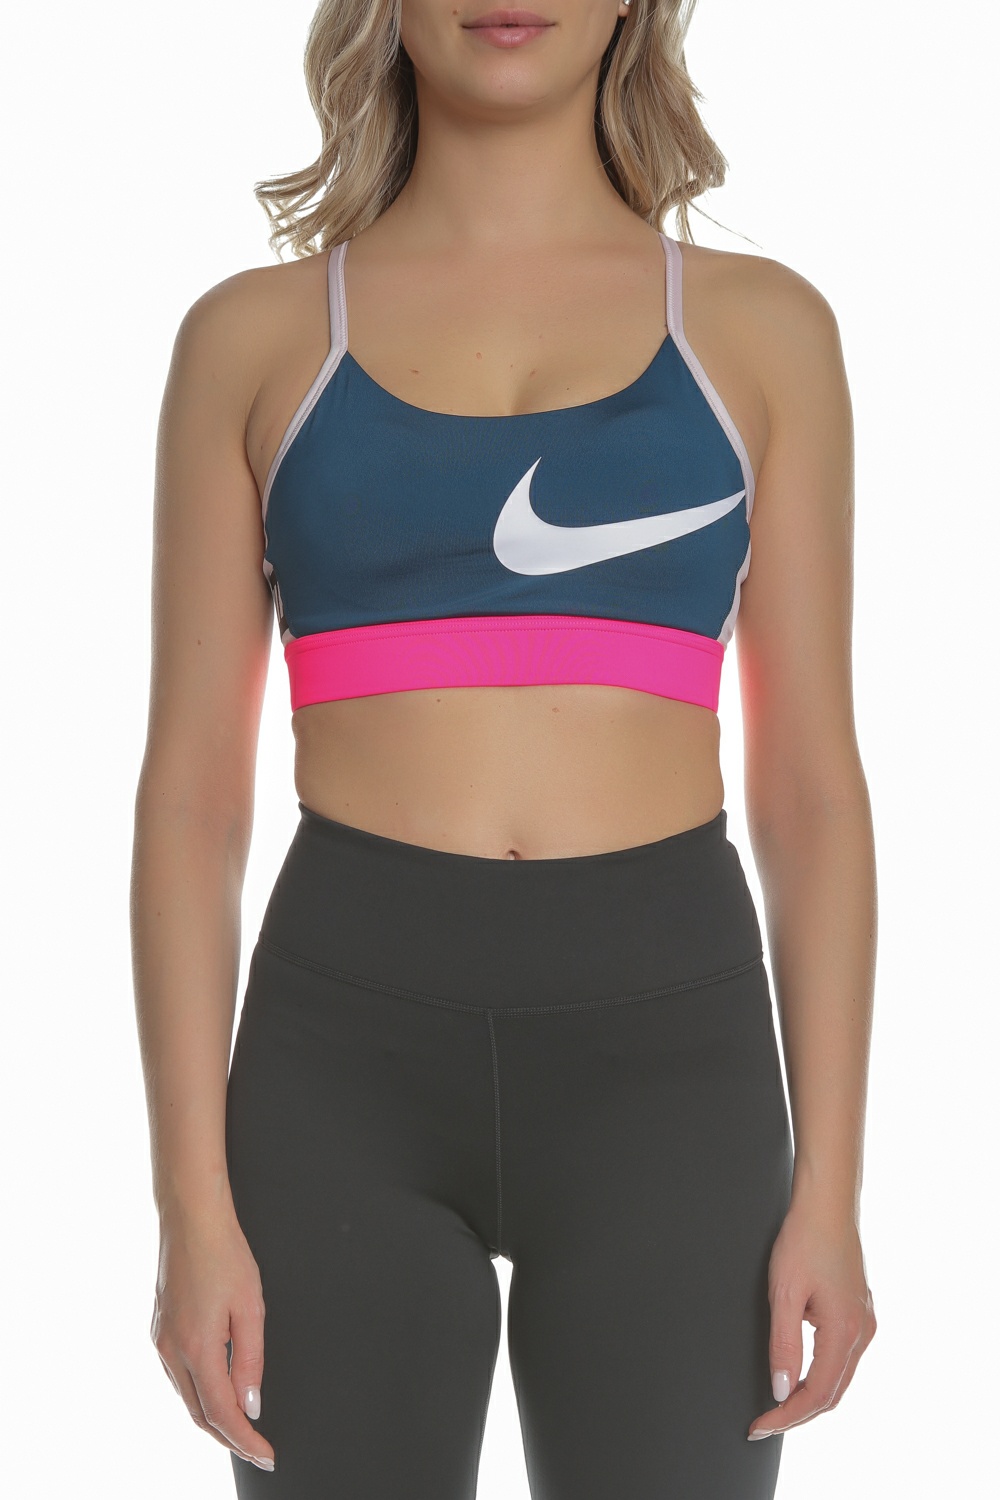 Γυναικεία/Ρούχα/Αθλητικά/Μπουστάκια NIKE - Γυναικείο αθλητικό μπουστάκι NIKE ICNCLSH BRA LIGHT μπλε ροζ